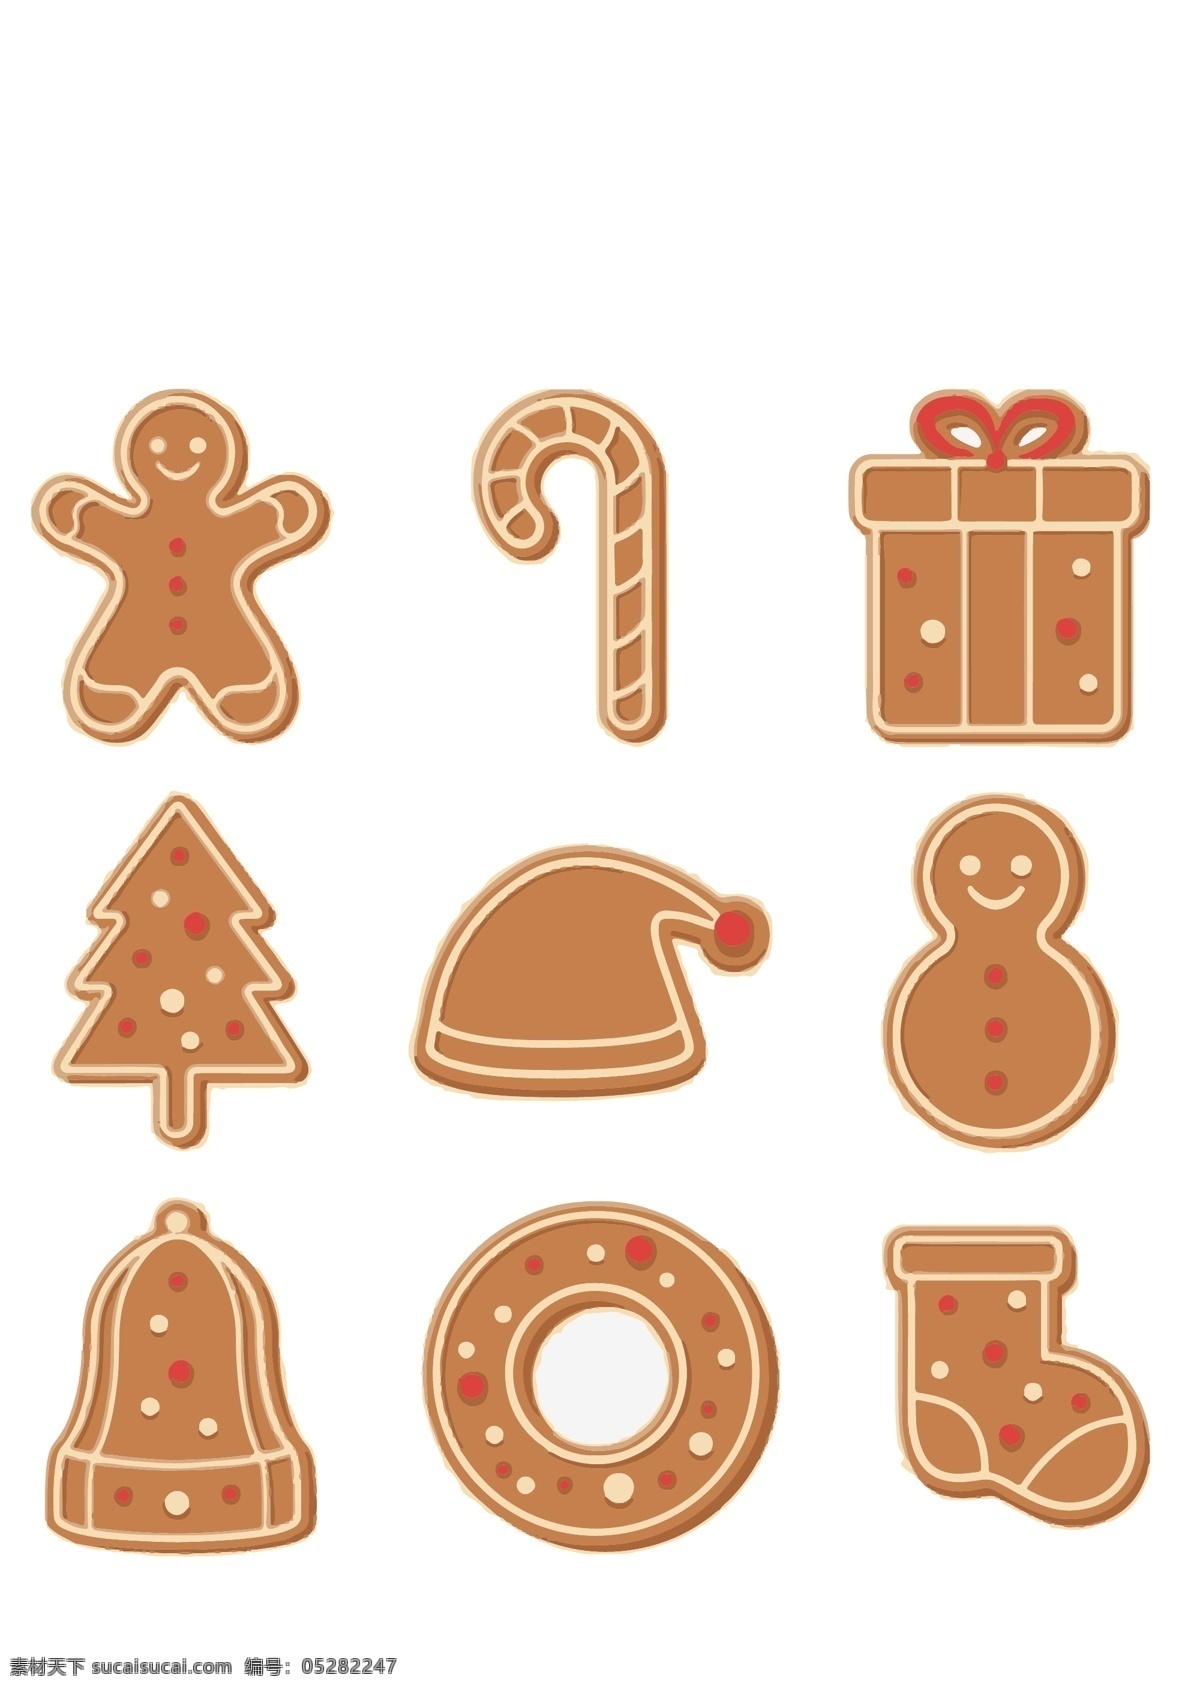 圣诞姜饼图片 可爱 卡通 姜饼人 圣诞 节 姜饼 圣诞树 饼干 拐杖 礼物 礼物盒 圣诞帽 帽子 雪人 圣诞袜 袜子 甜甜圈 铃铛